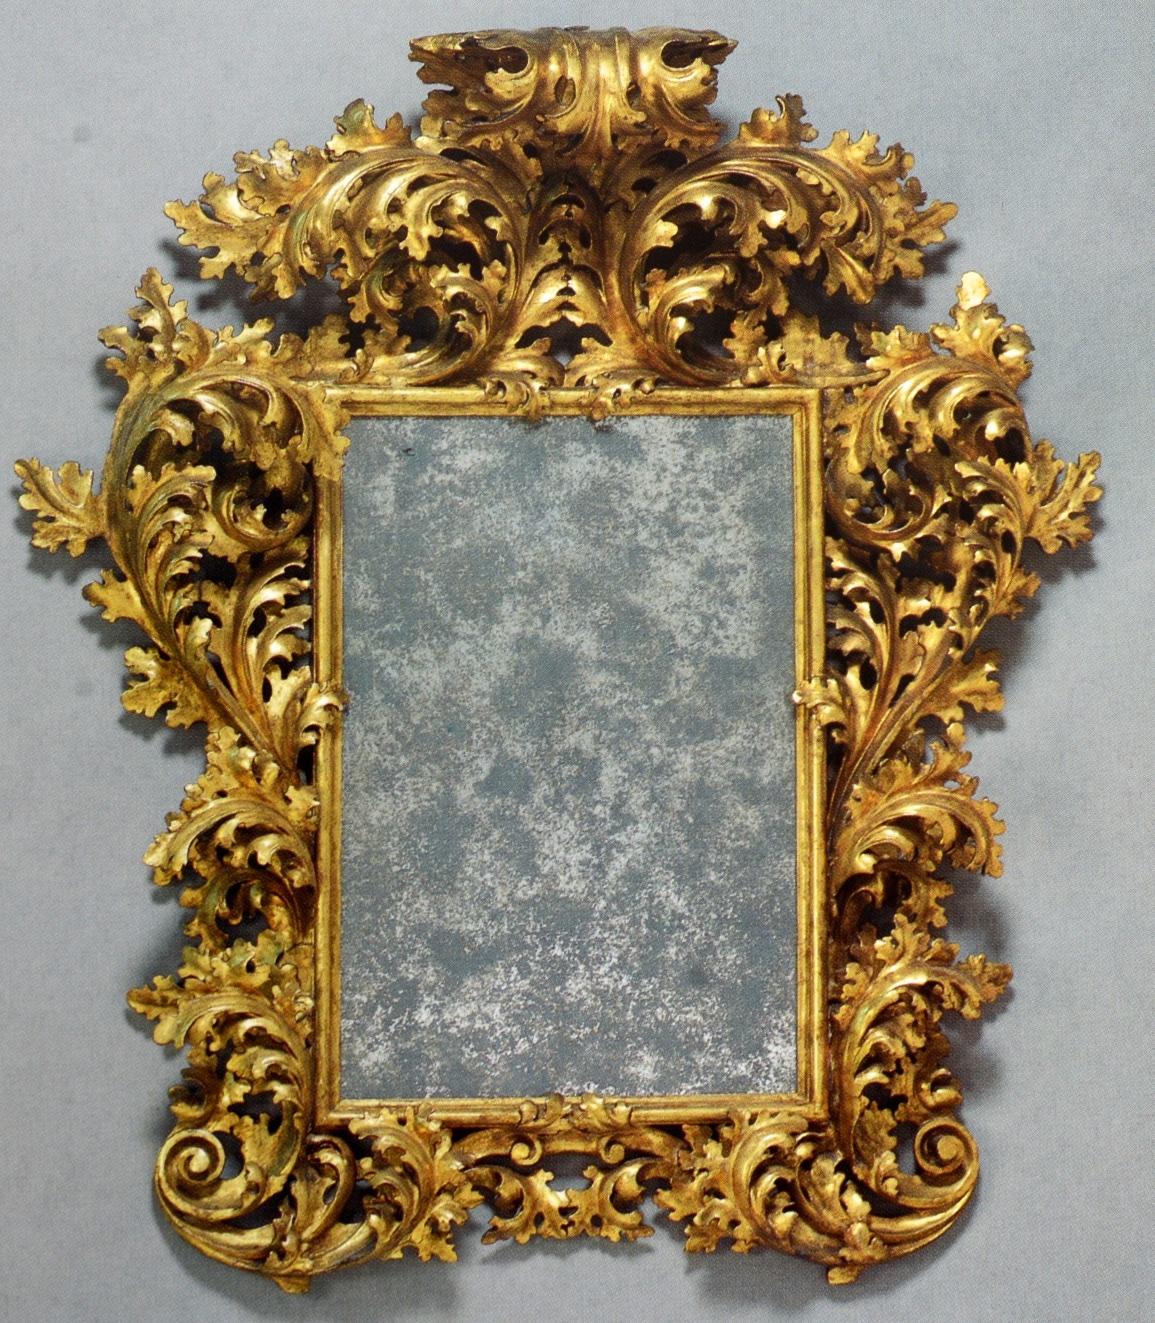 Sotheby's A Collection de la succession de William Randolph Hearst, Jr. 1